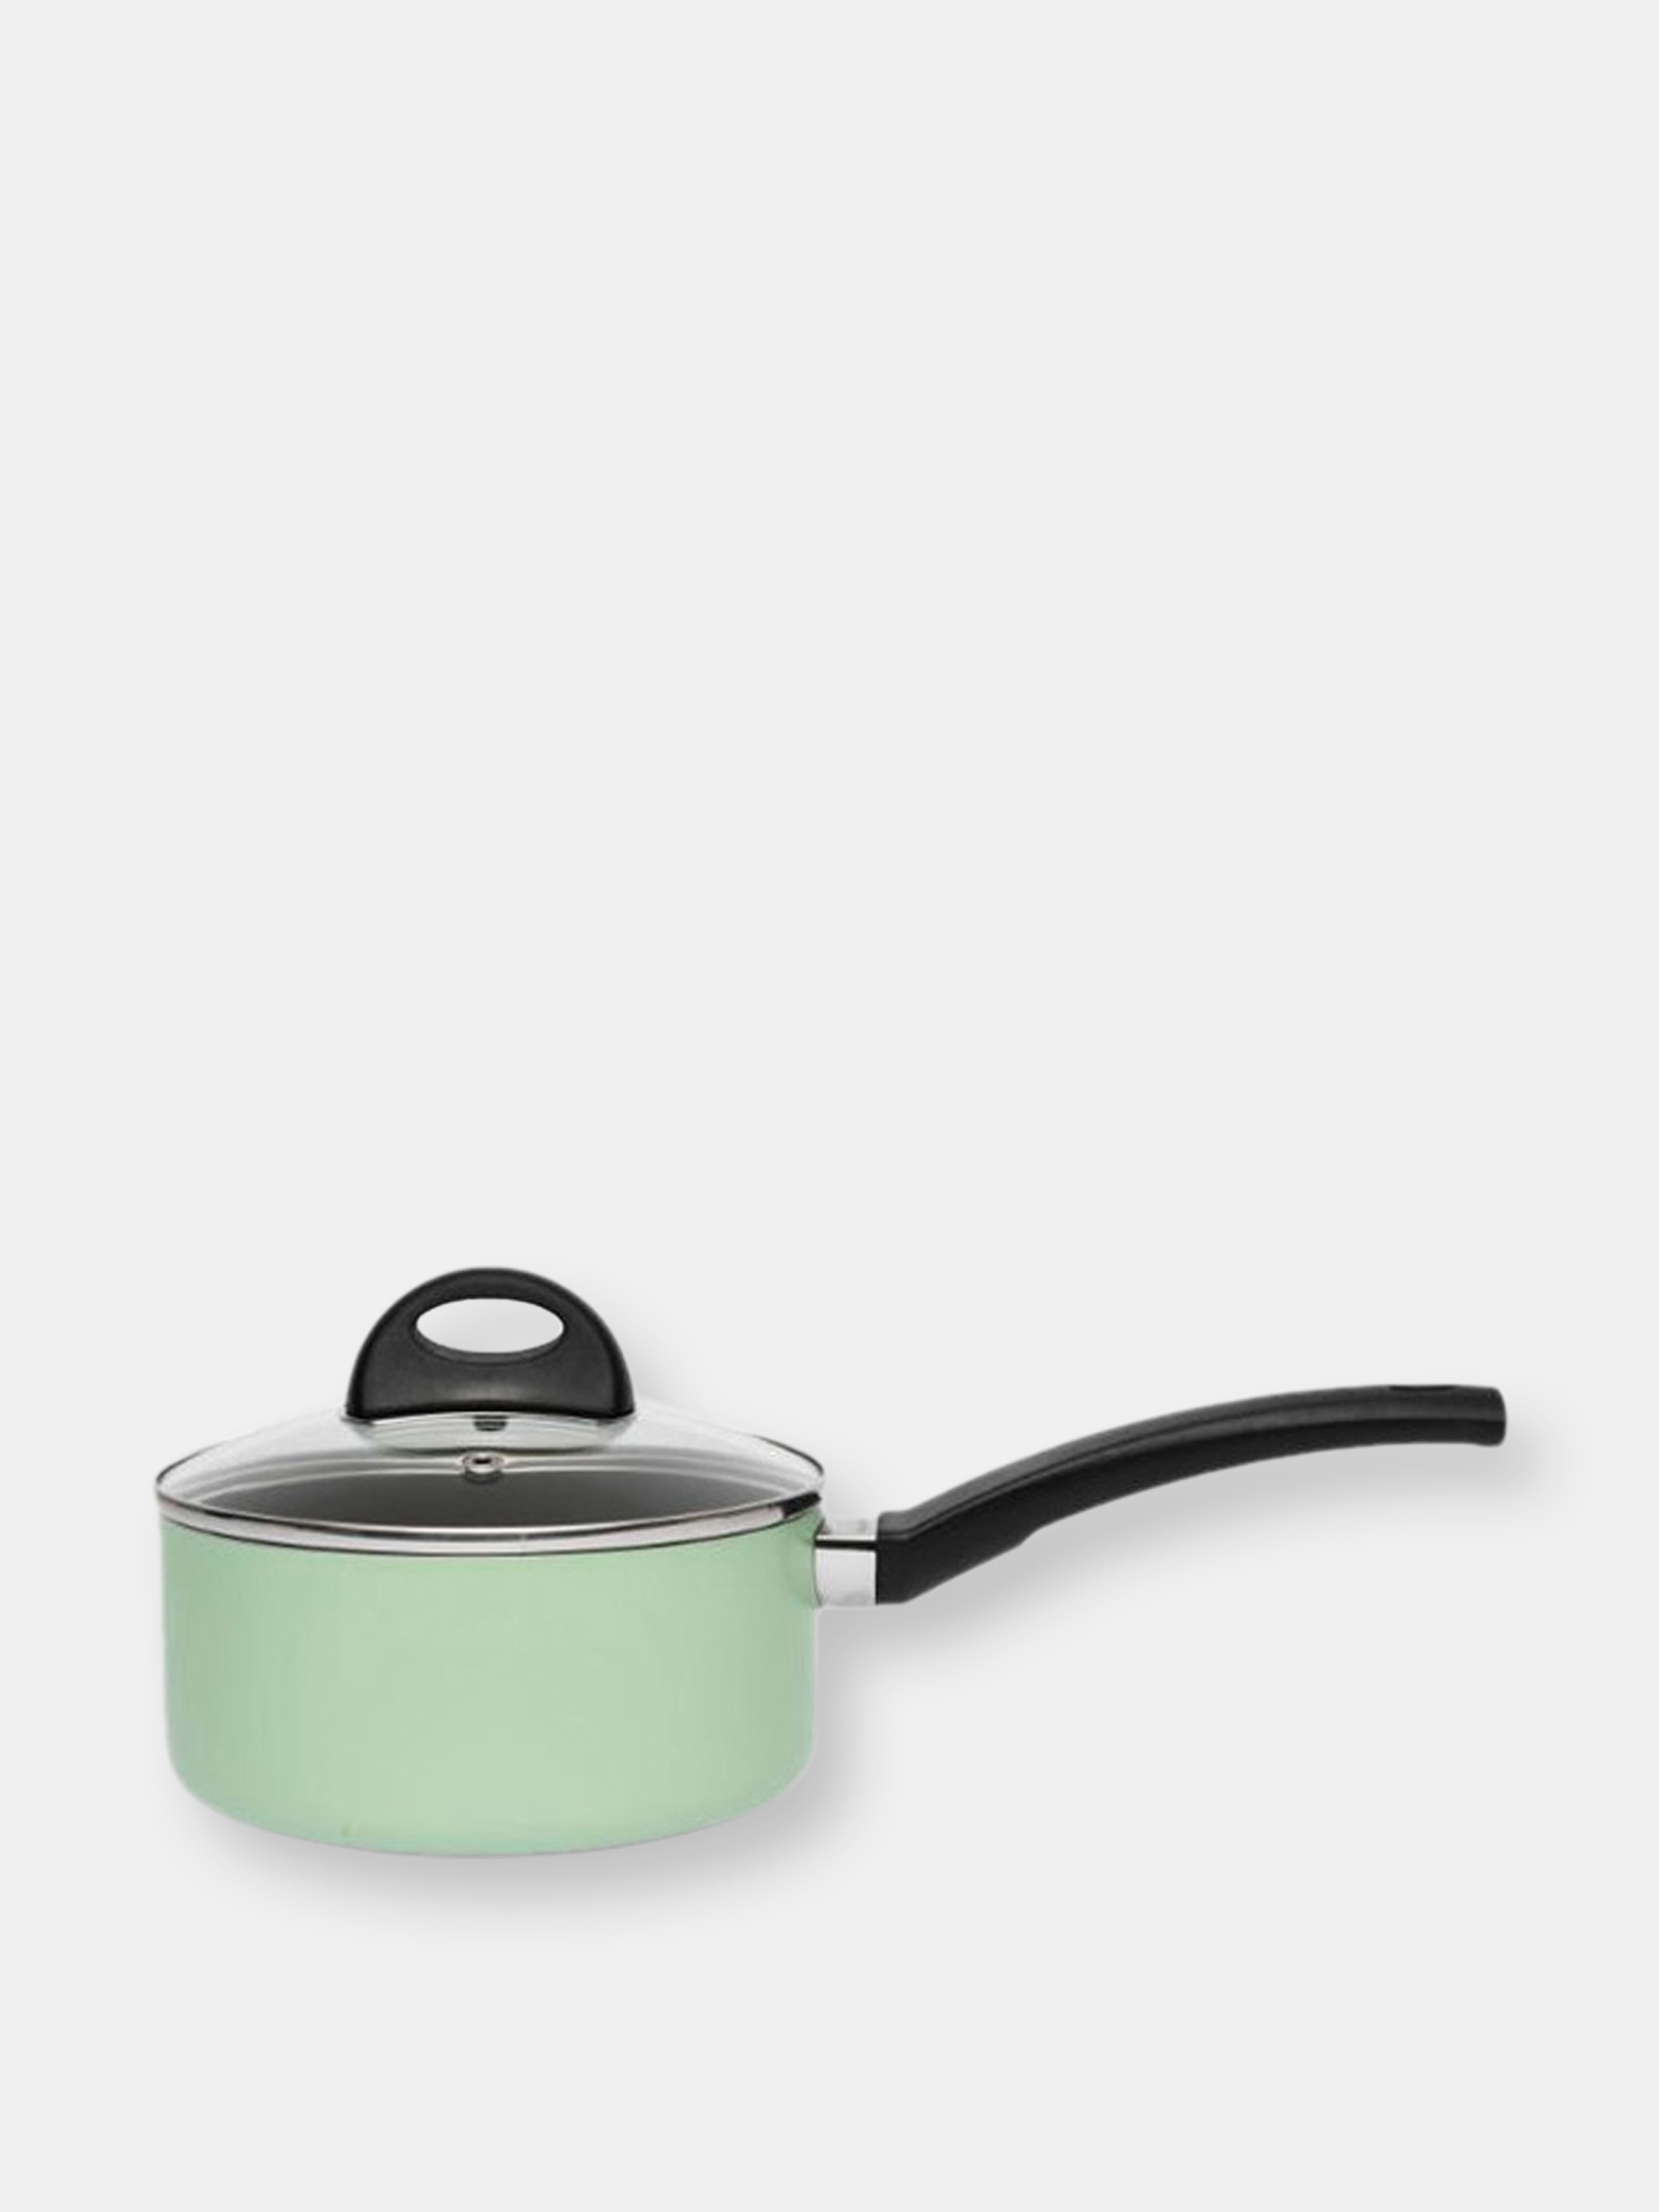 5440516 B. Green 1.25-Quart Sauce Pan